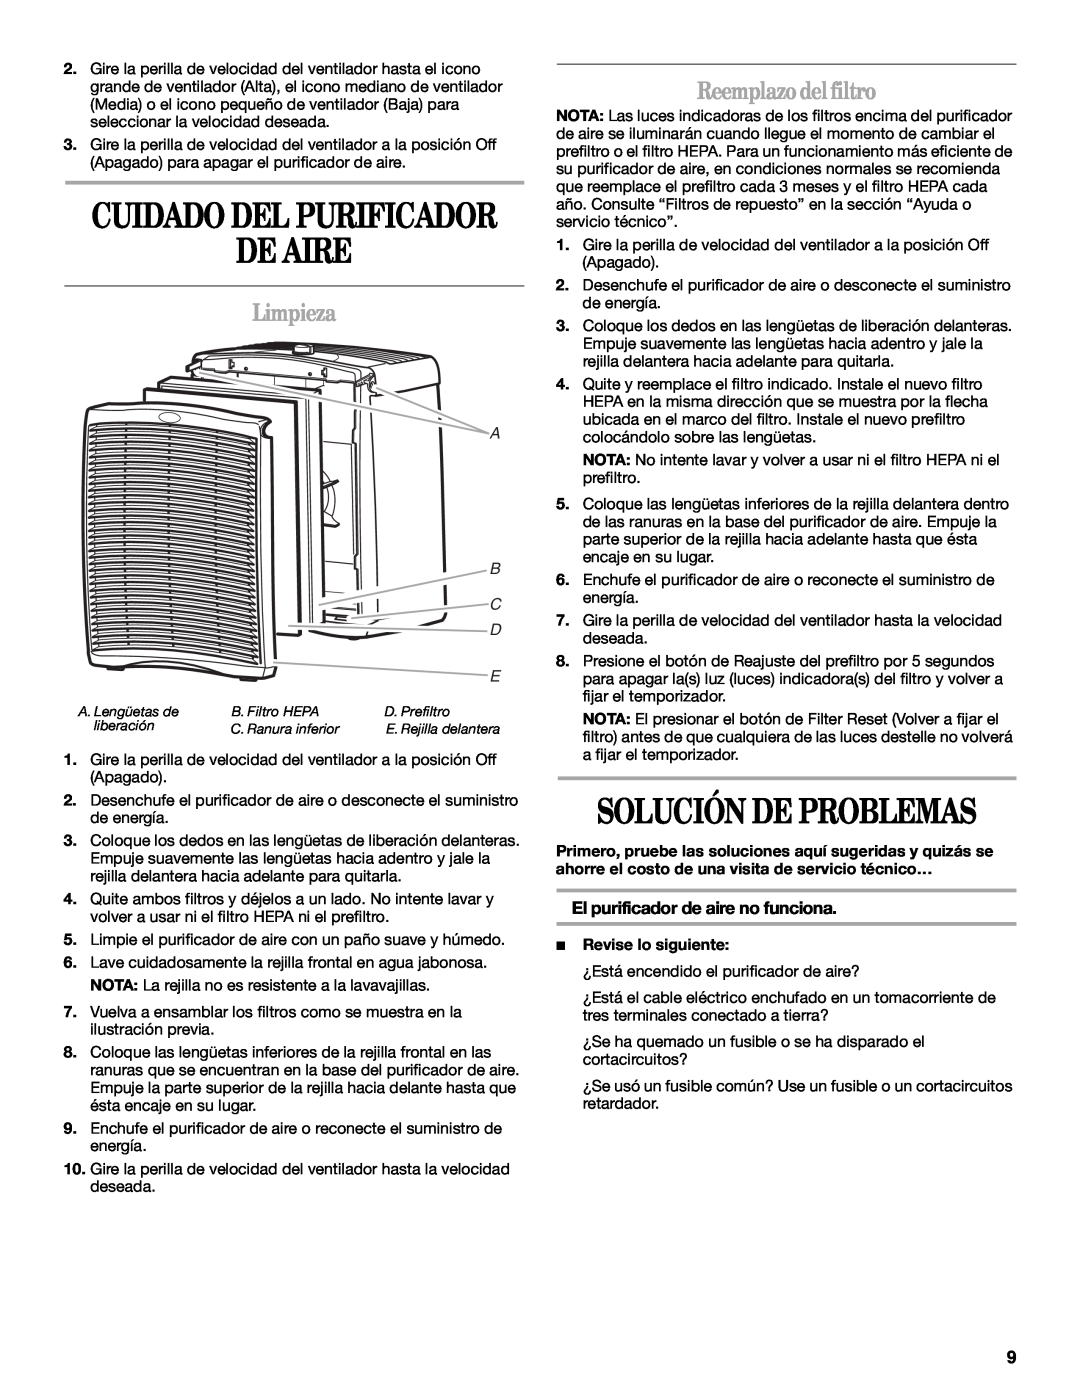 Whirlpool 1188694 manual De Aire, Solución De Problemas, Cuidado Del Purificador, Limpieza, Reemplazodelfiltro, A B C D 